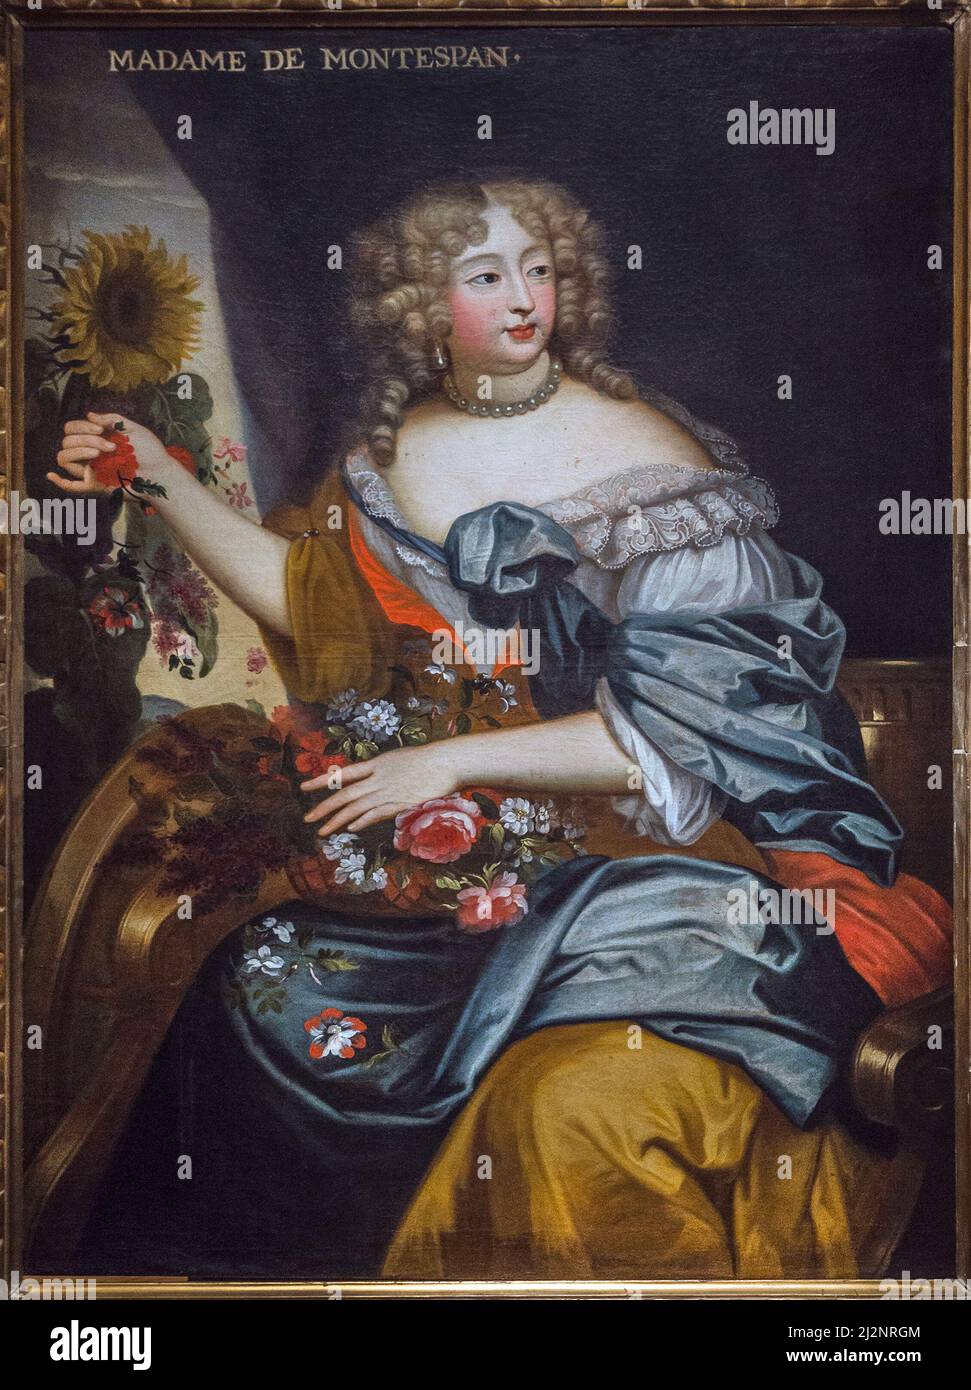 Portrait de Madame de Montespan en flore - Marquise de Montespan - aile sur toile- 17eme siecle - le Mans Musée de Tessé Banque D'Images